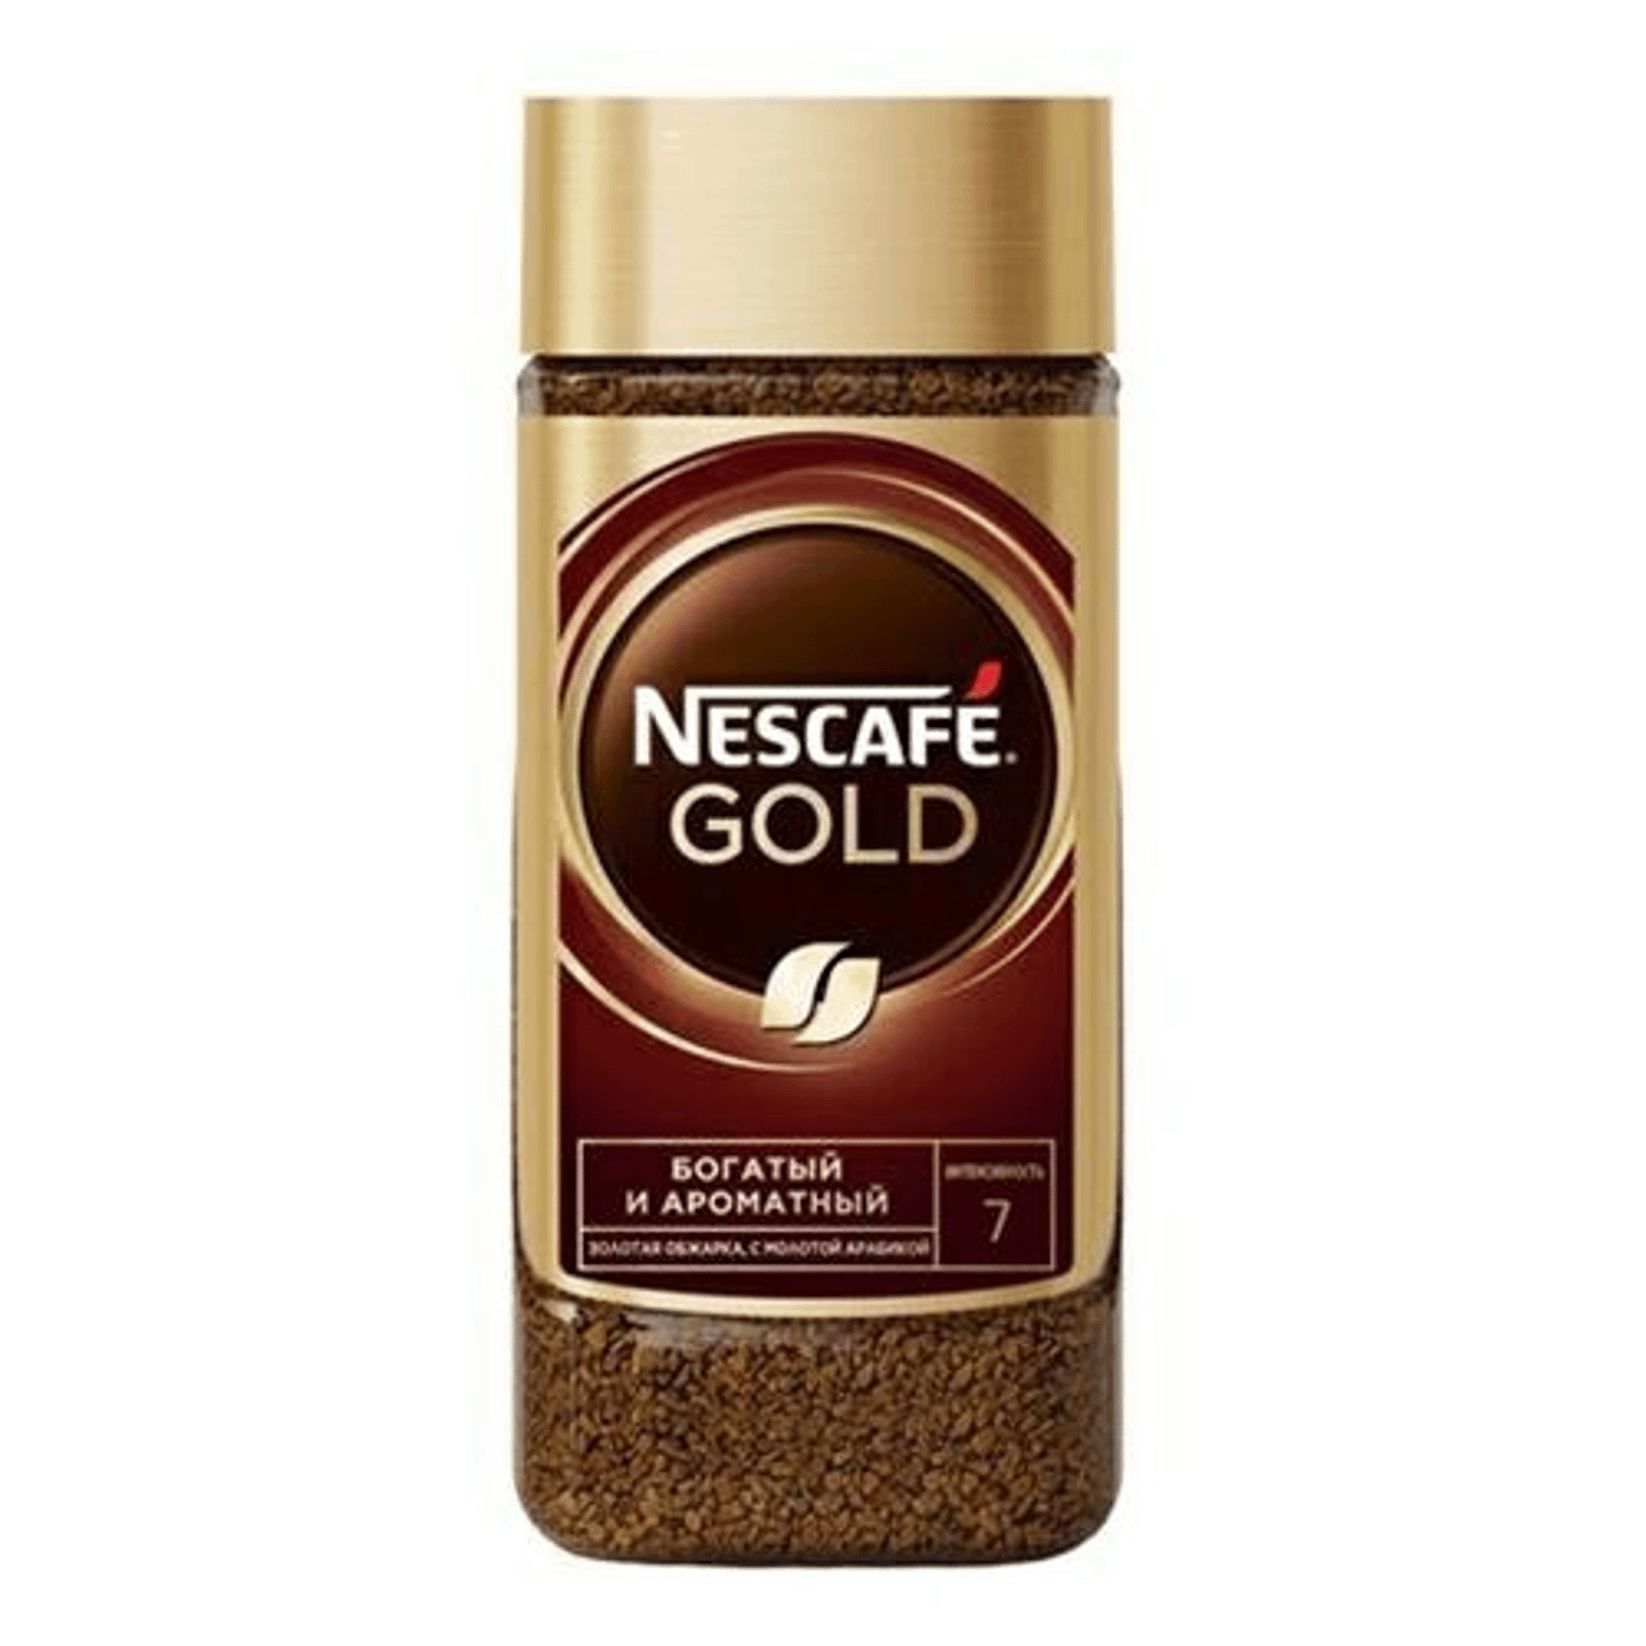 Nescafe gold 190 г. Нескафе Голд 95 гр. Кофе Нескафе Голд 95г. Кофе Nescafe Gold, 95гр. Кофе Нескафе Голд 95г ст/б.